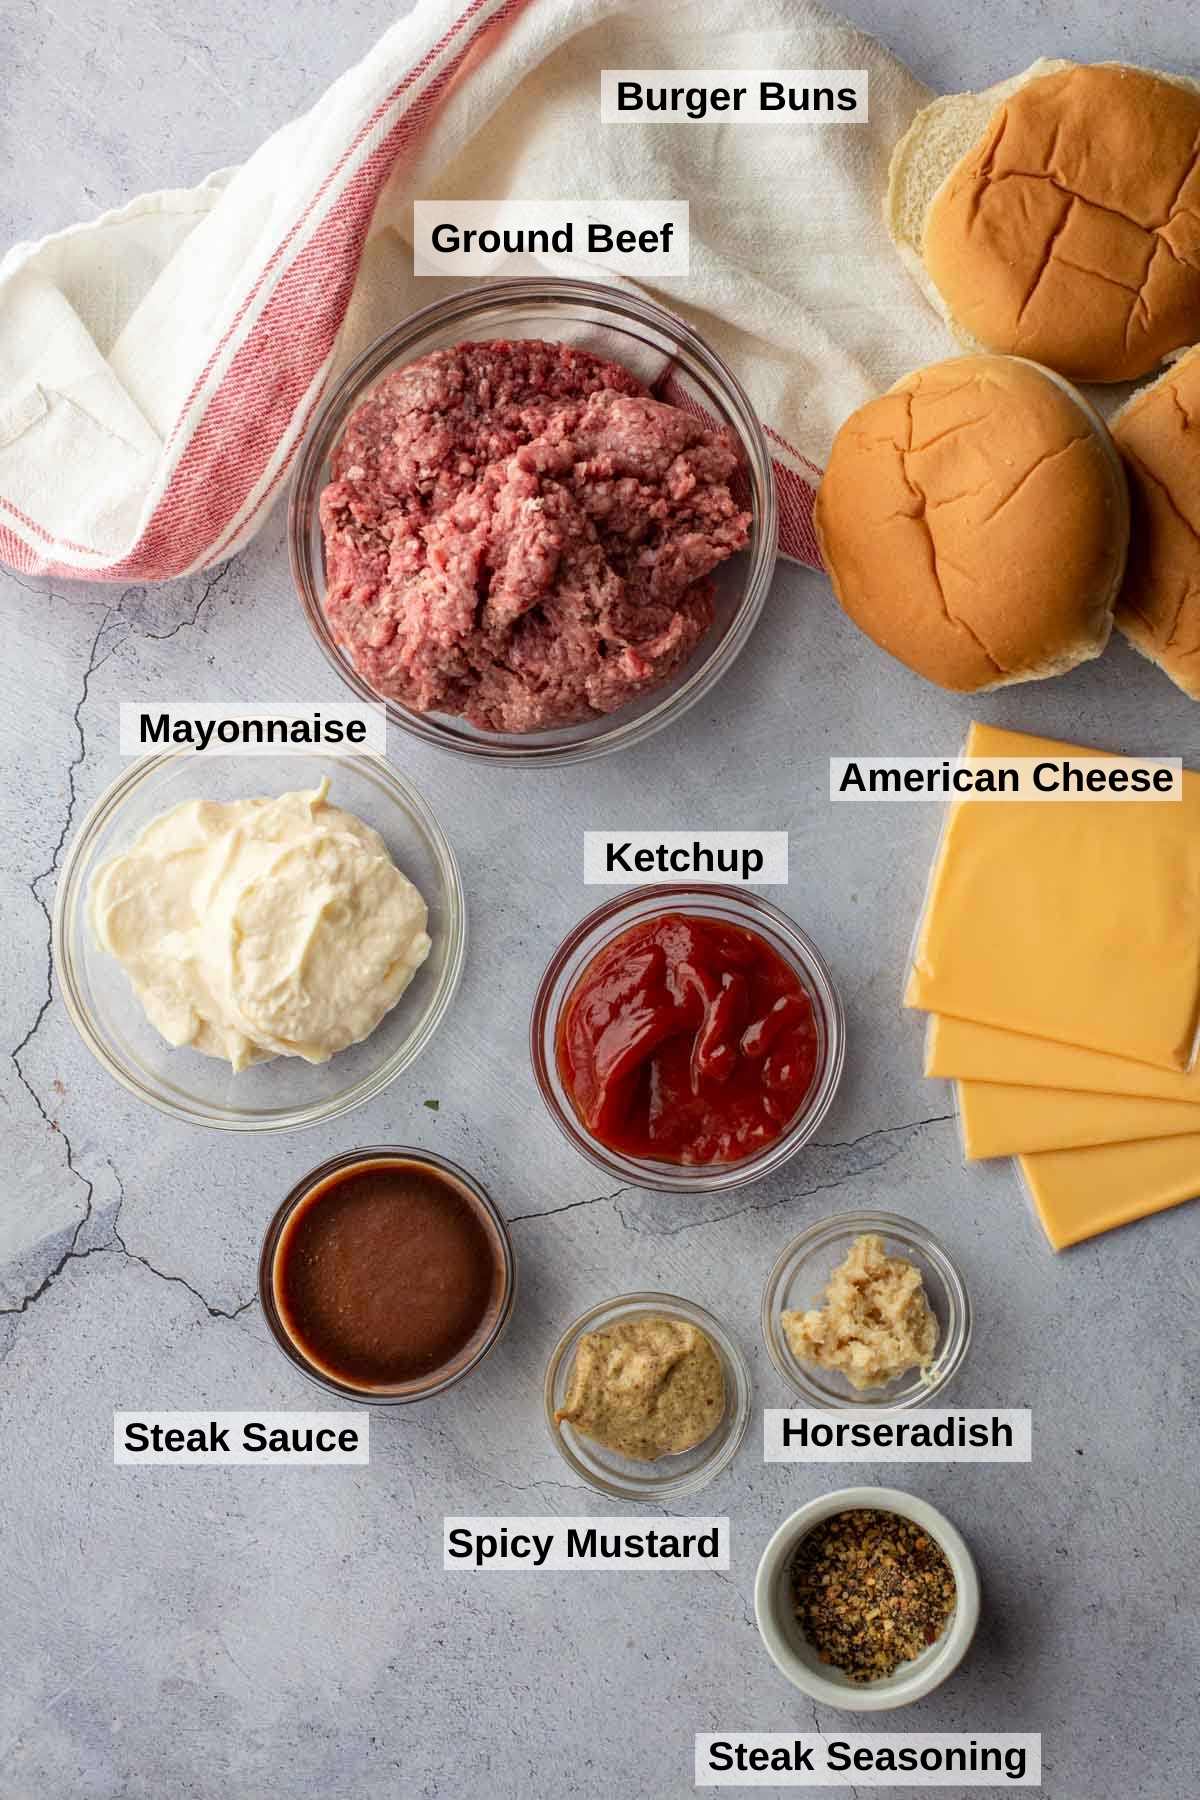 Ingredients to make steak house burgers.